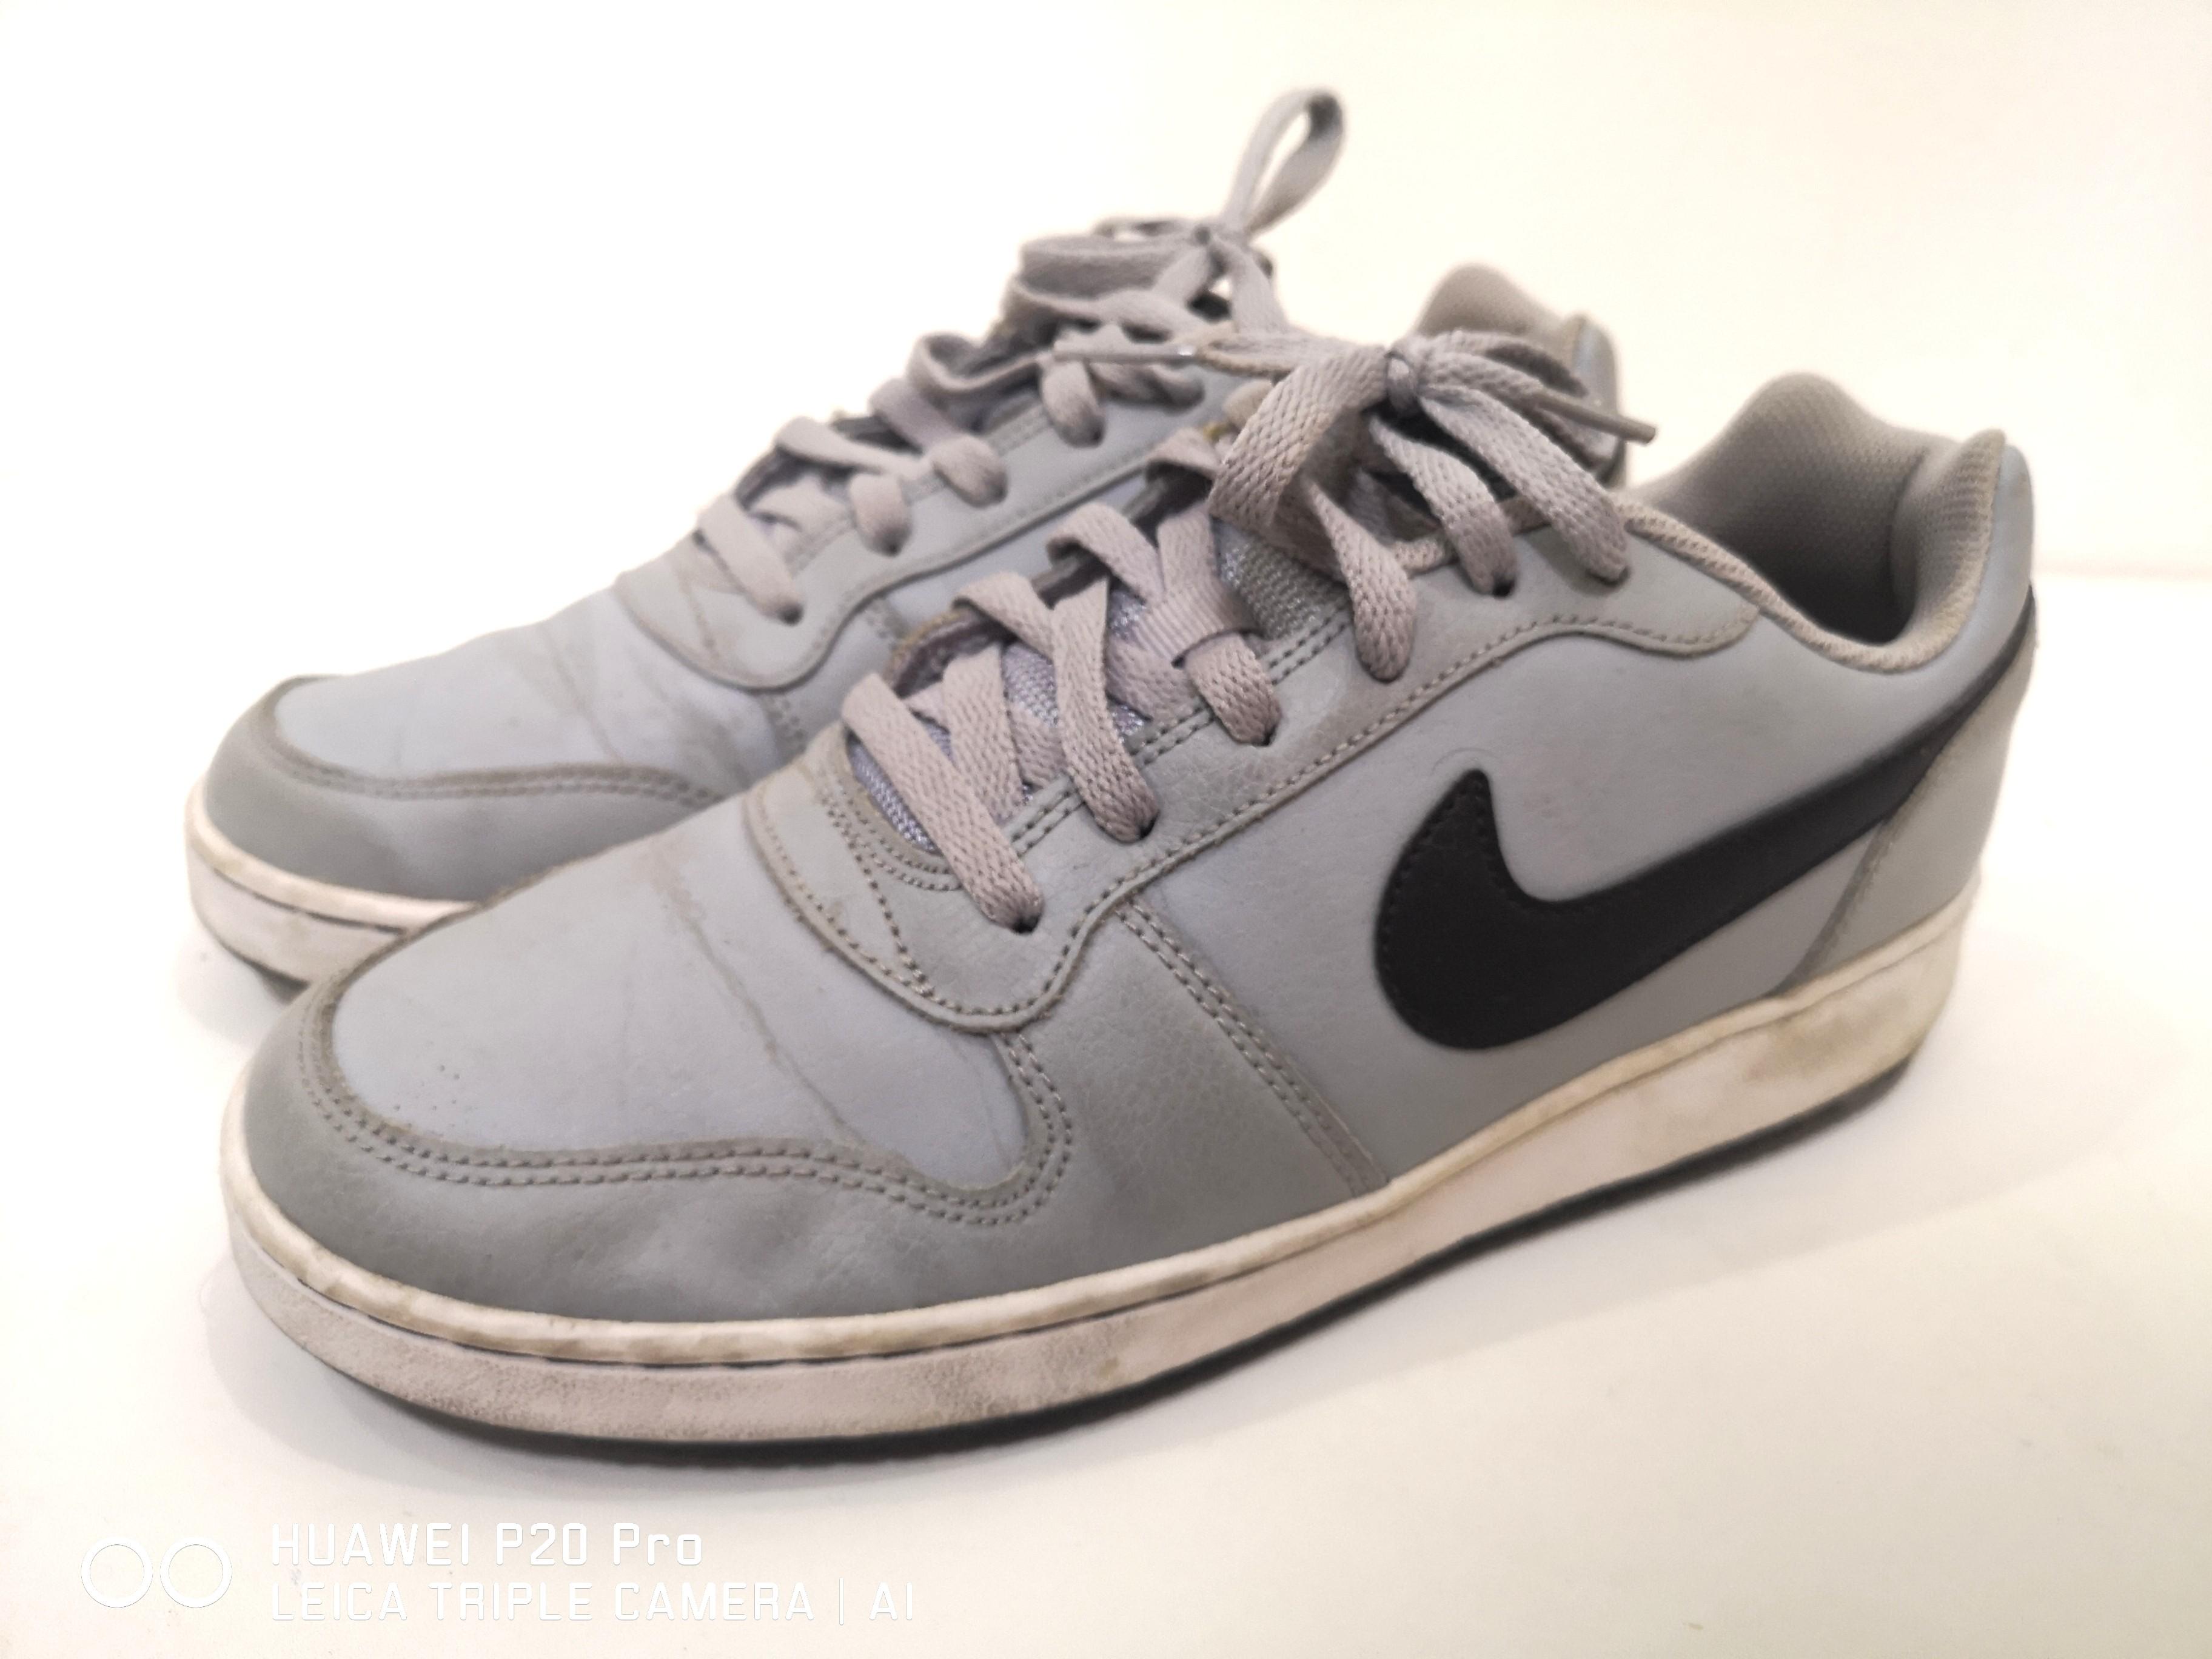 Nike Tens Grey/White US8.5/EU42, Fesyen 